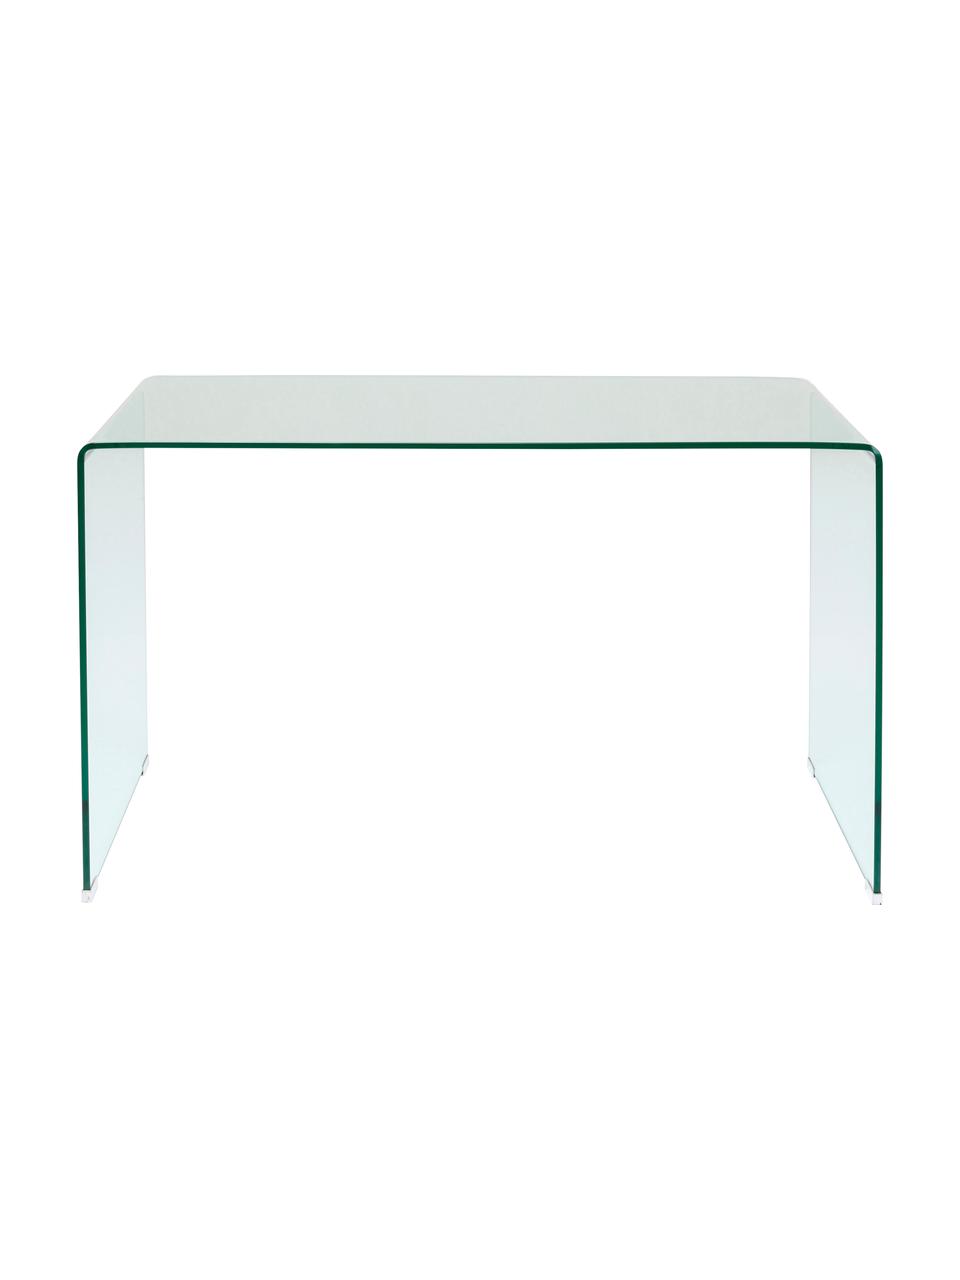 Schreibtisch Club aus Glas, Glas, Transparent, B 125 x T 60 cm